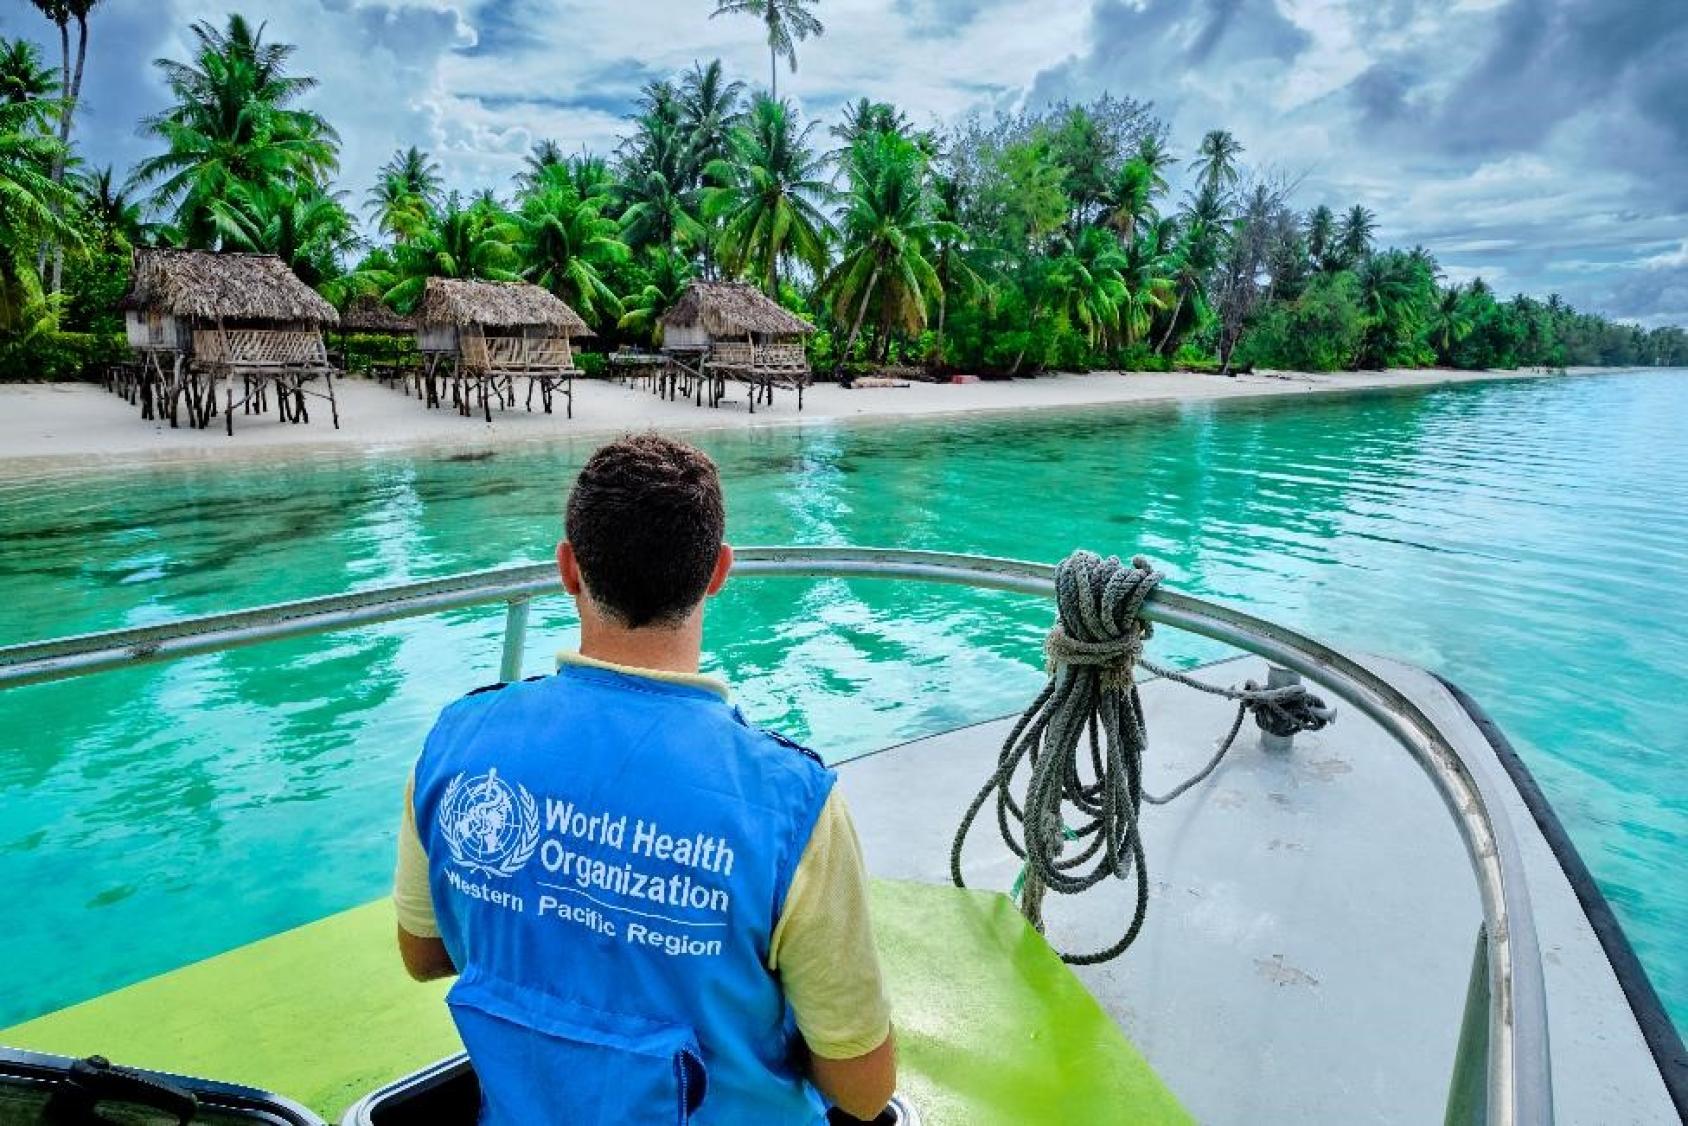 A Kiribati, un membre du personnel de l’OMS portant un gilet bleu navigue à bord d’un bateau dans l’eau turquoise de l’océan, à proximité d’un rivage bordé de palmiers où ont été construites deux rangées de cabanes.